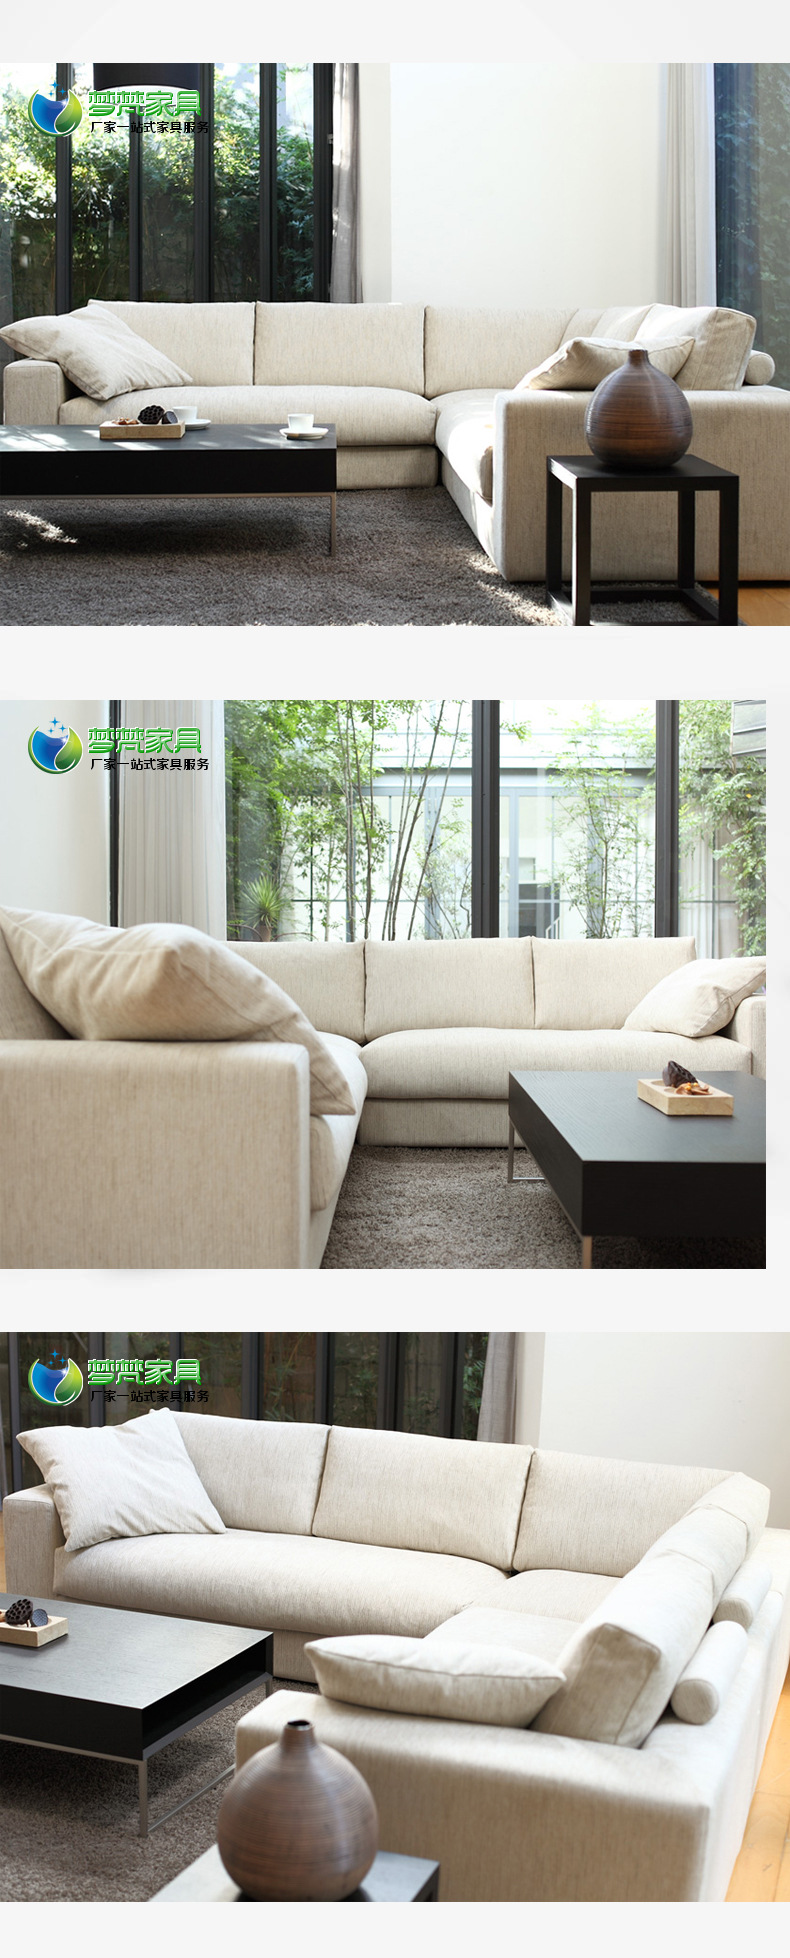 【梦梵】佛山厂家直销 现代客厅布艺沙发大中小户型沙发 一件代发